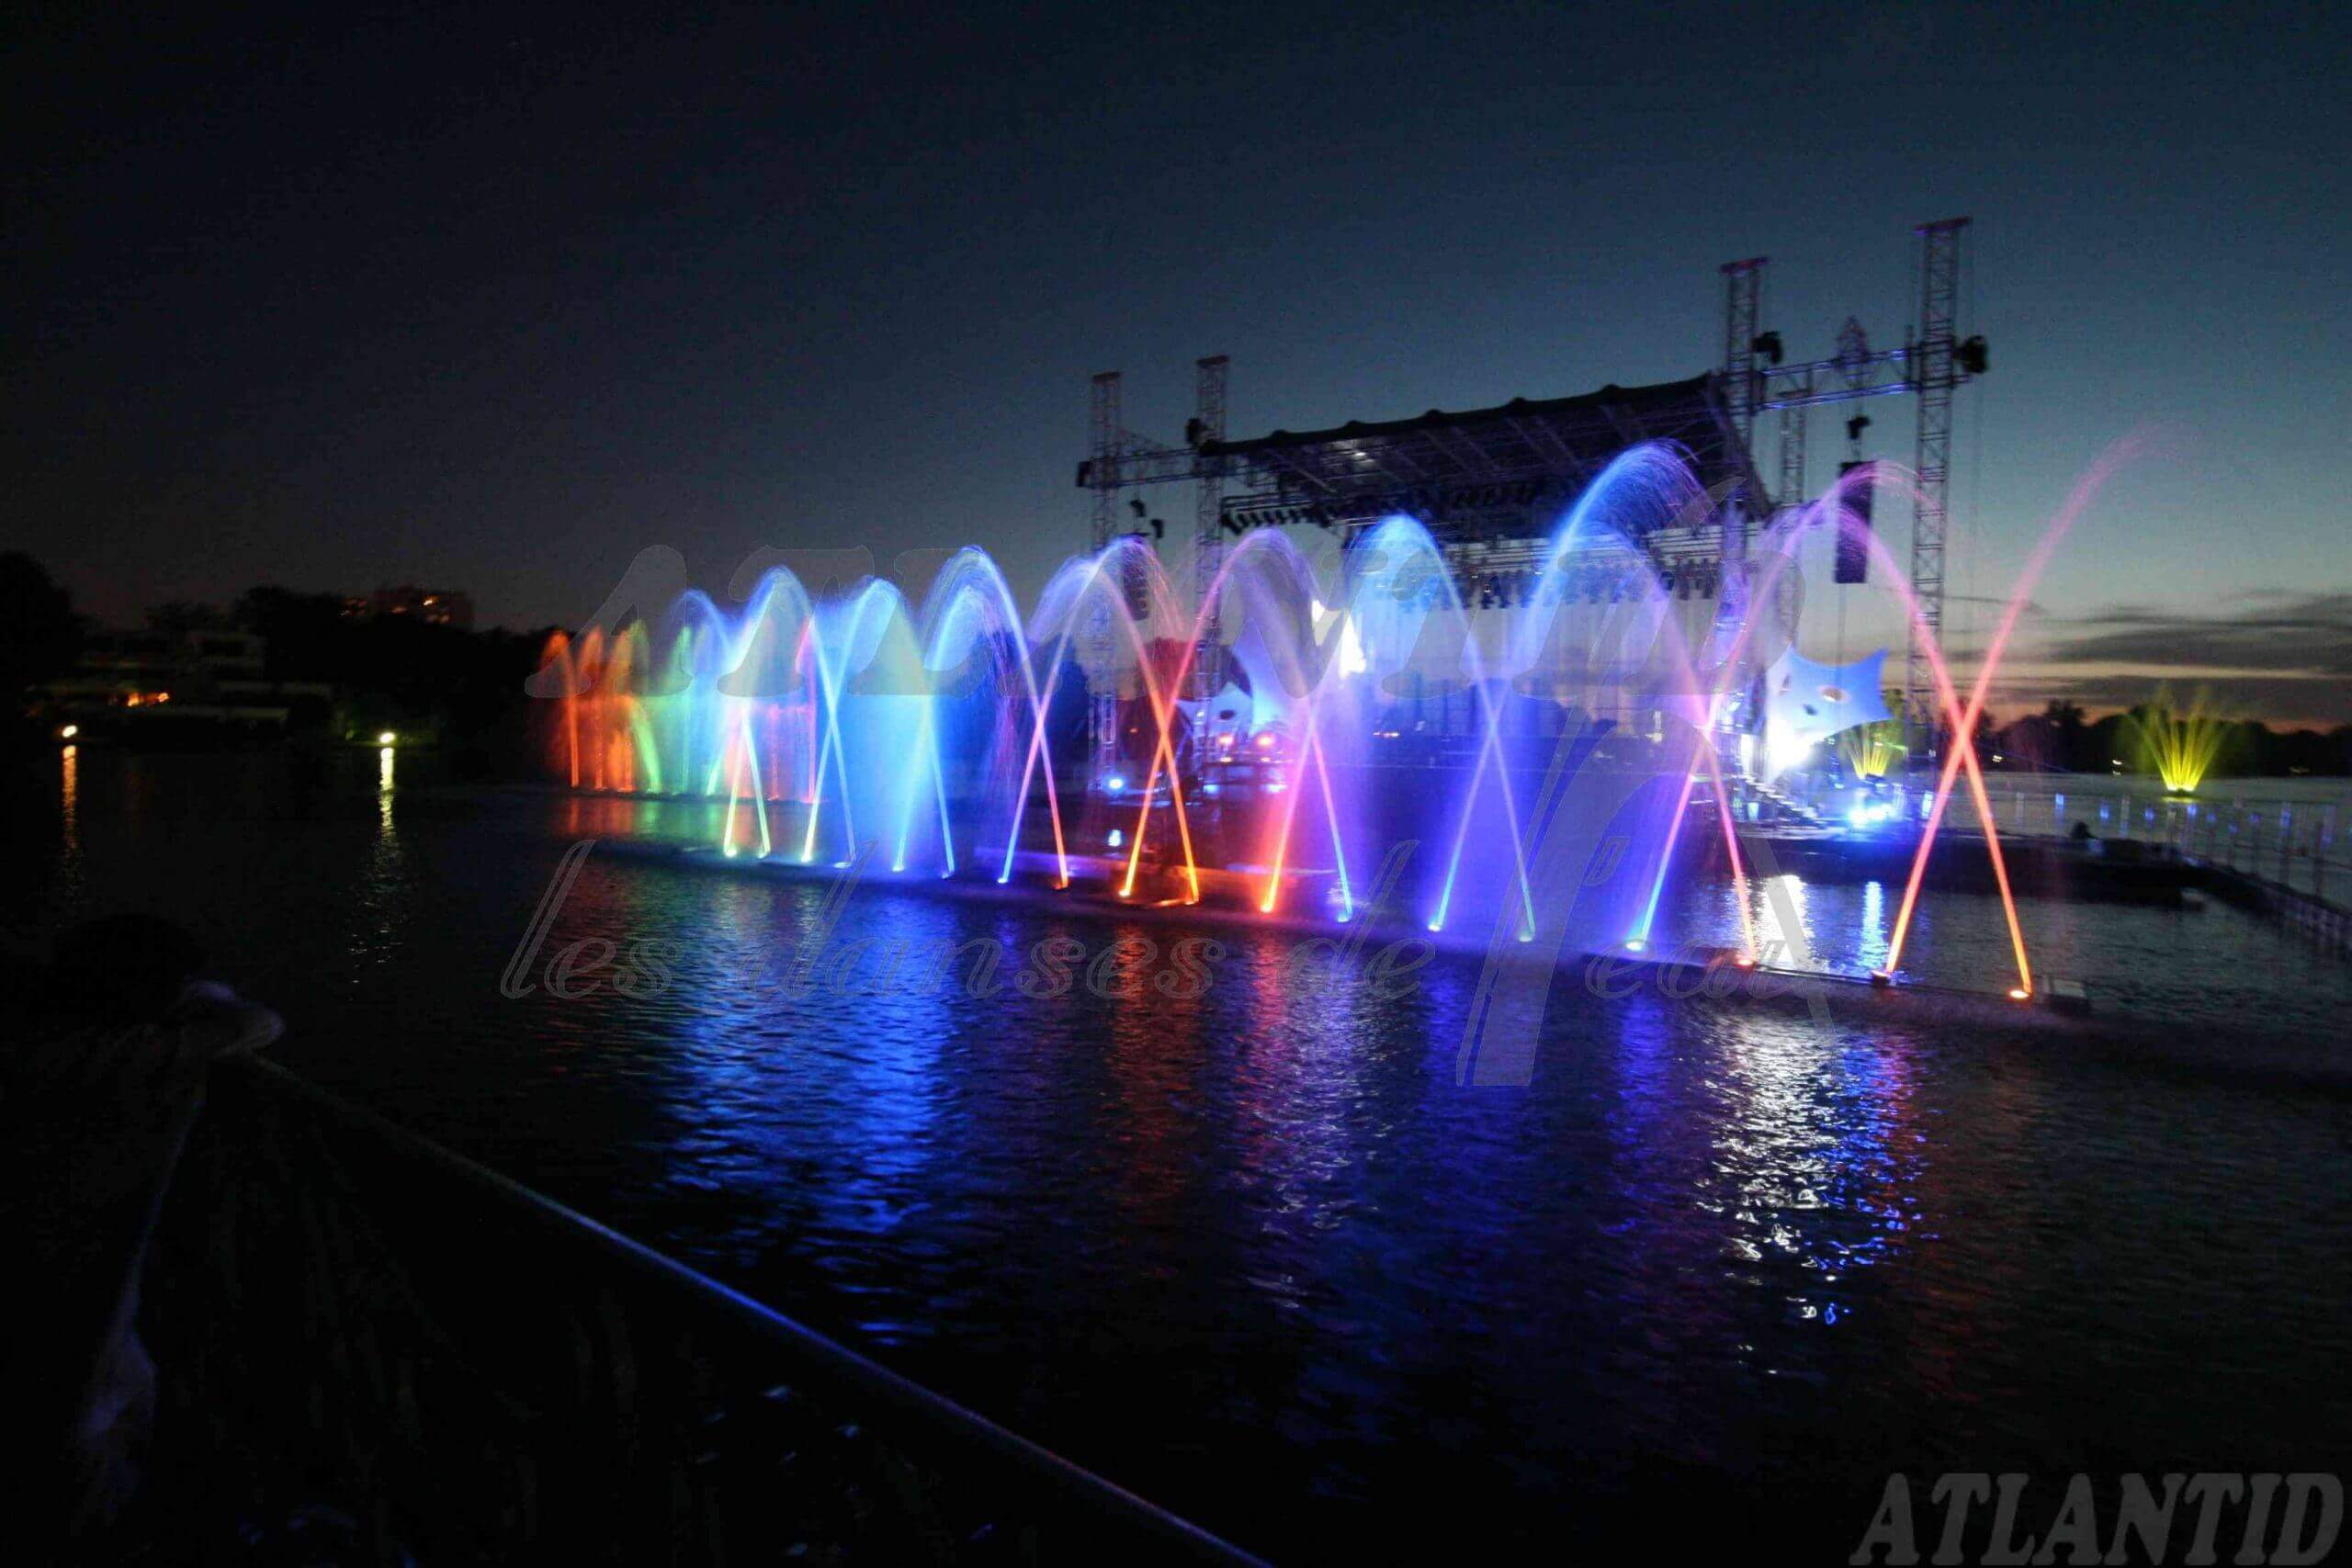 Atlantid - Show personnalisé - Scène avec jets d'eau multicolores devant